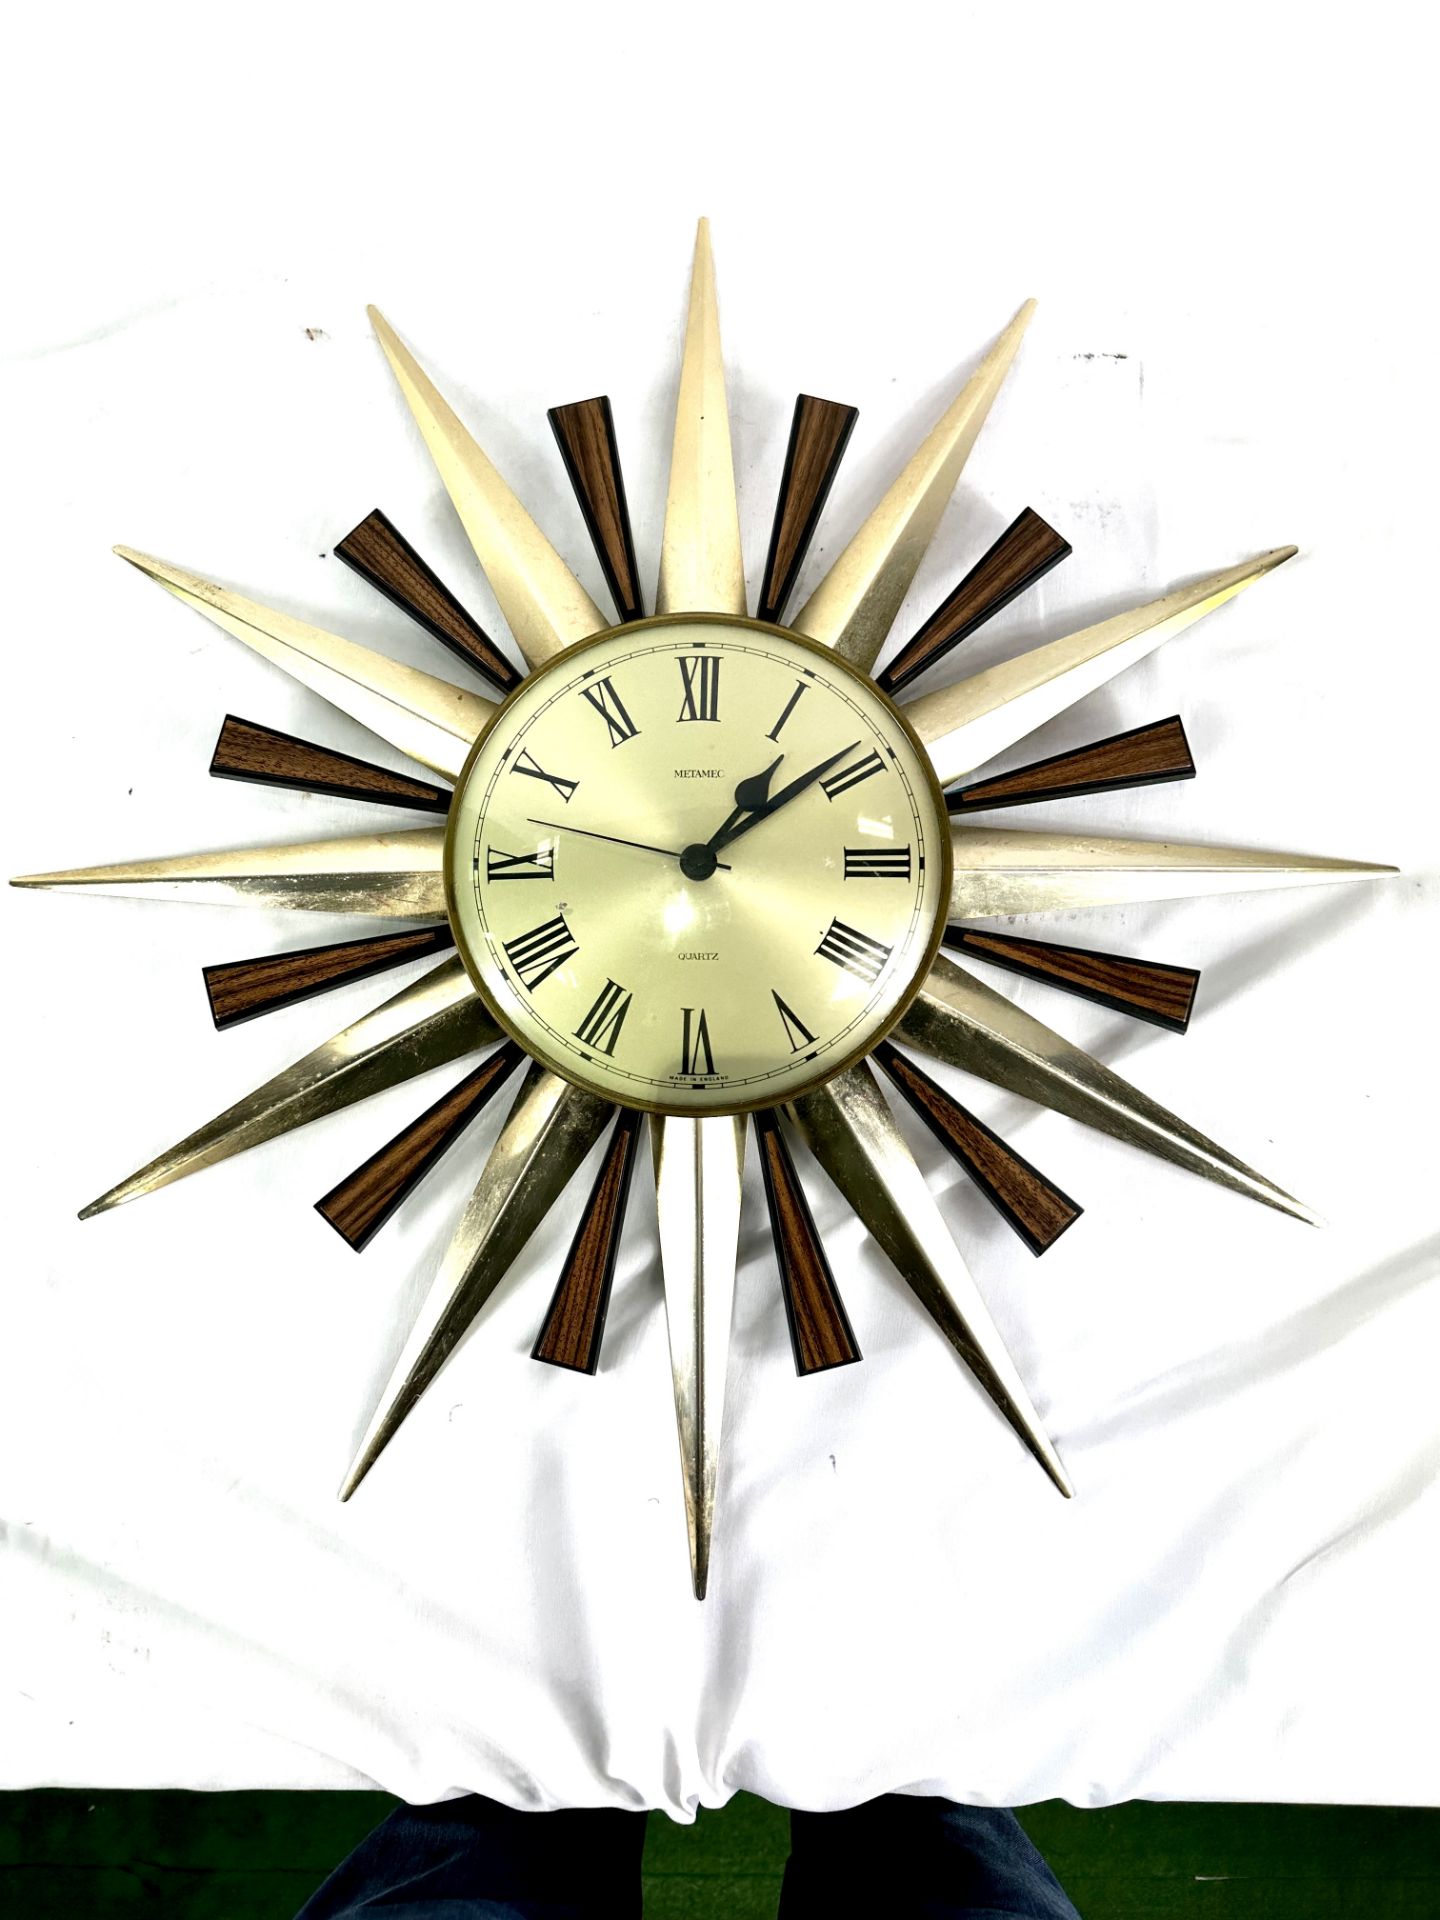 Metamec quartz clock - Image 2 of 5